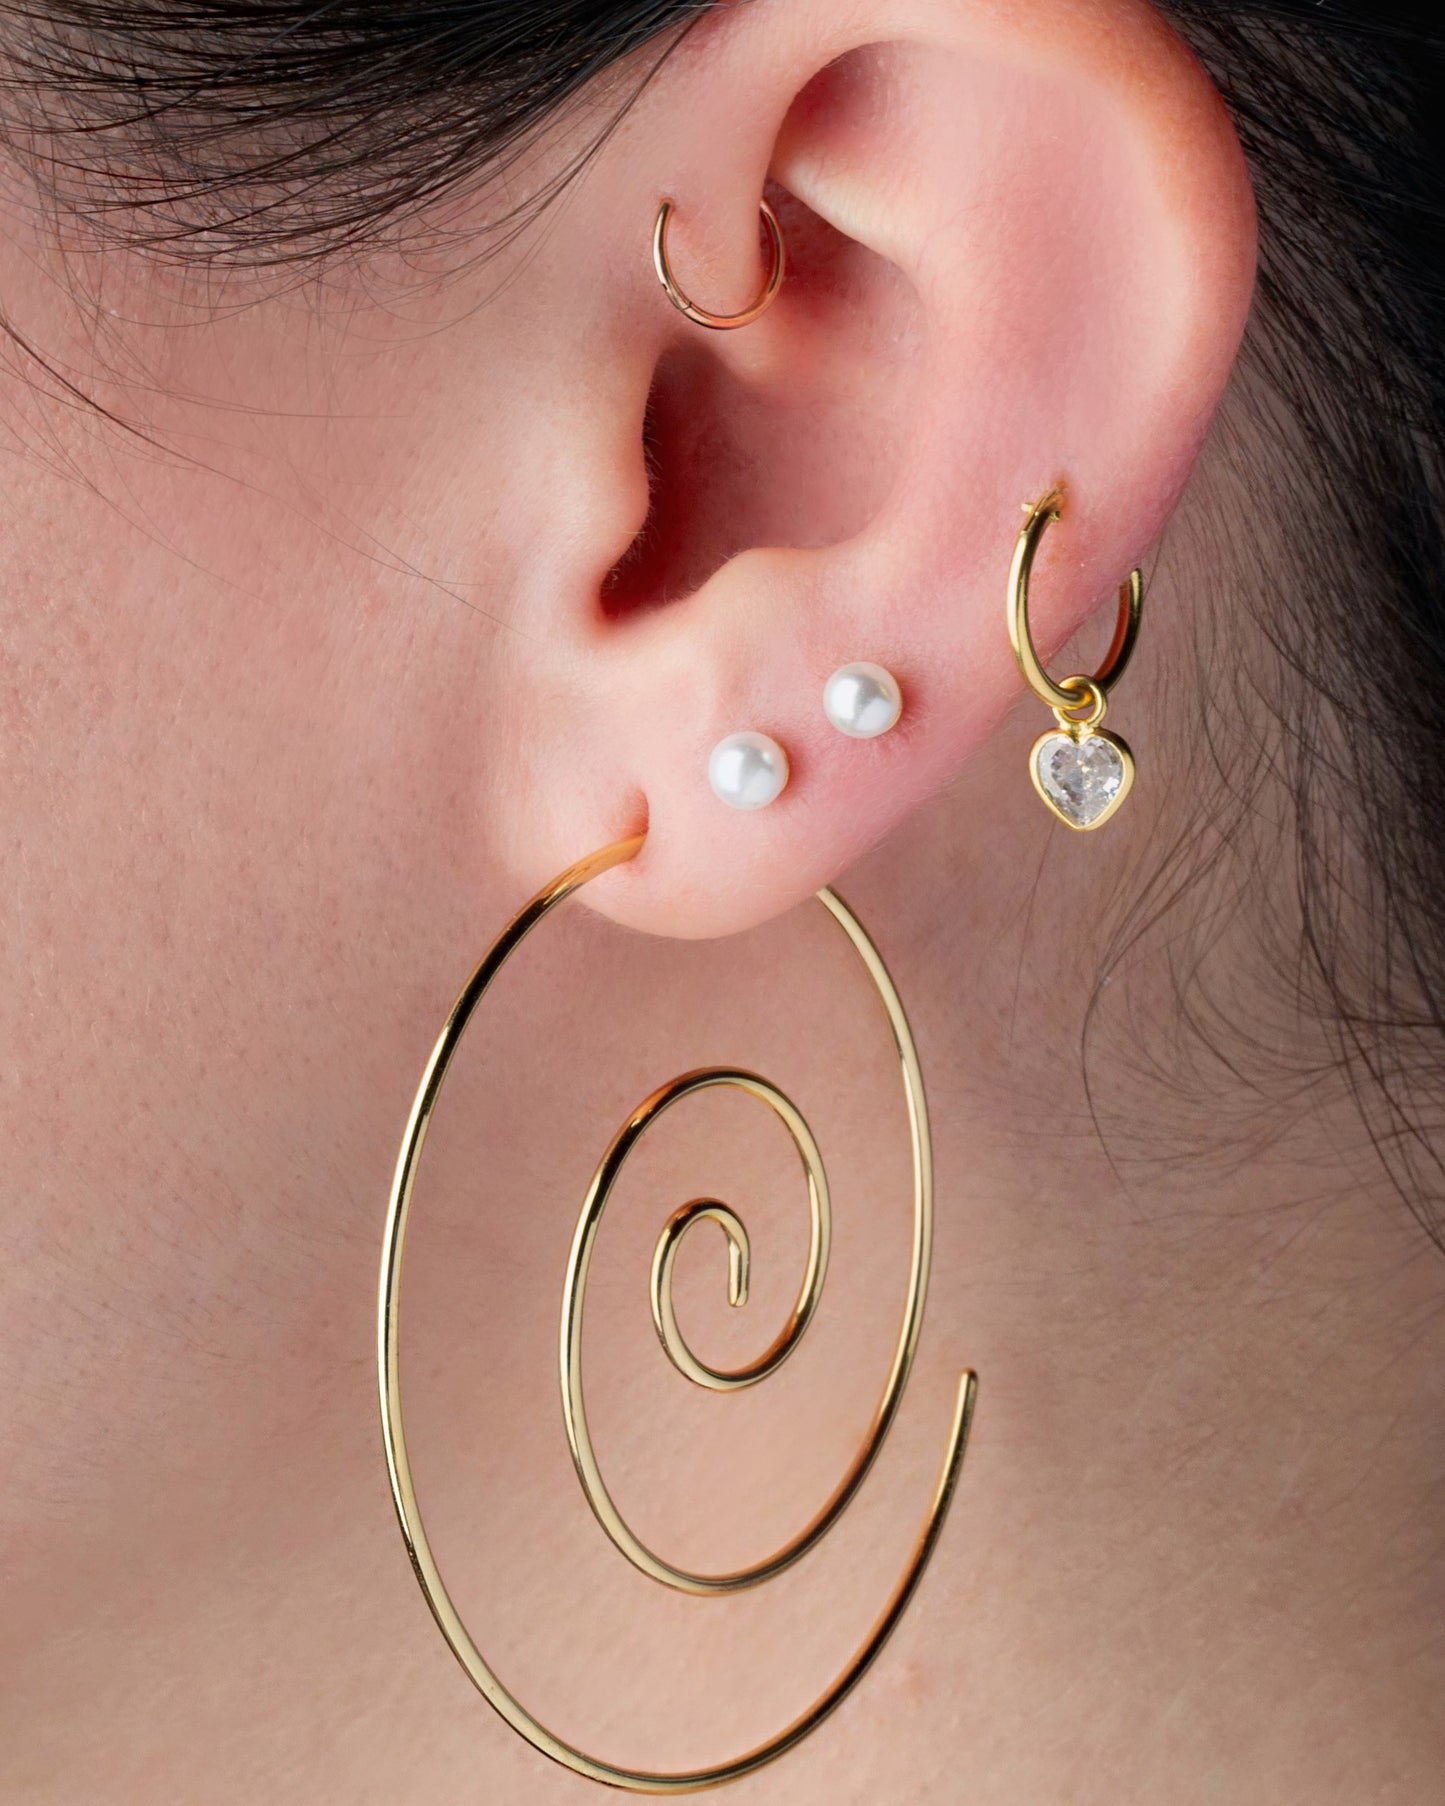 Large Spiral Coiled Hoop Earrings - Stainless Steel - Pair